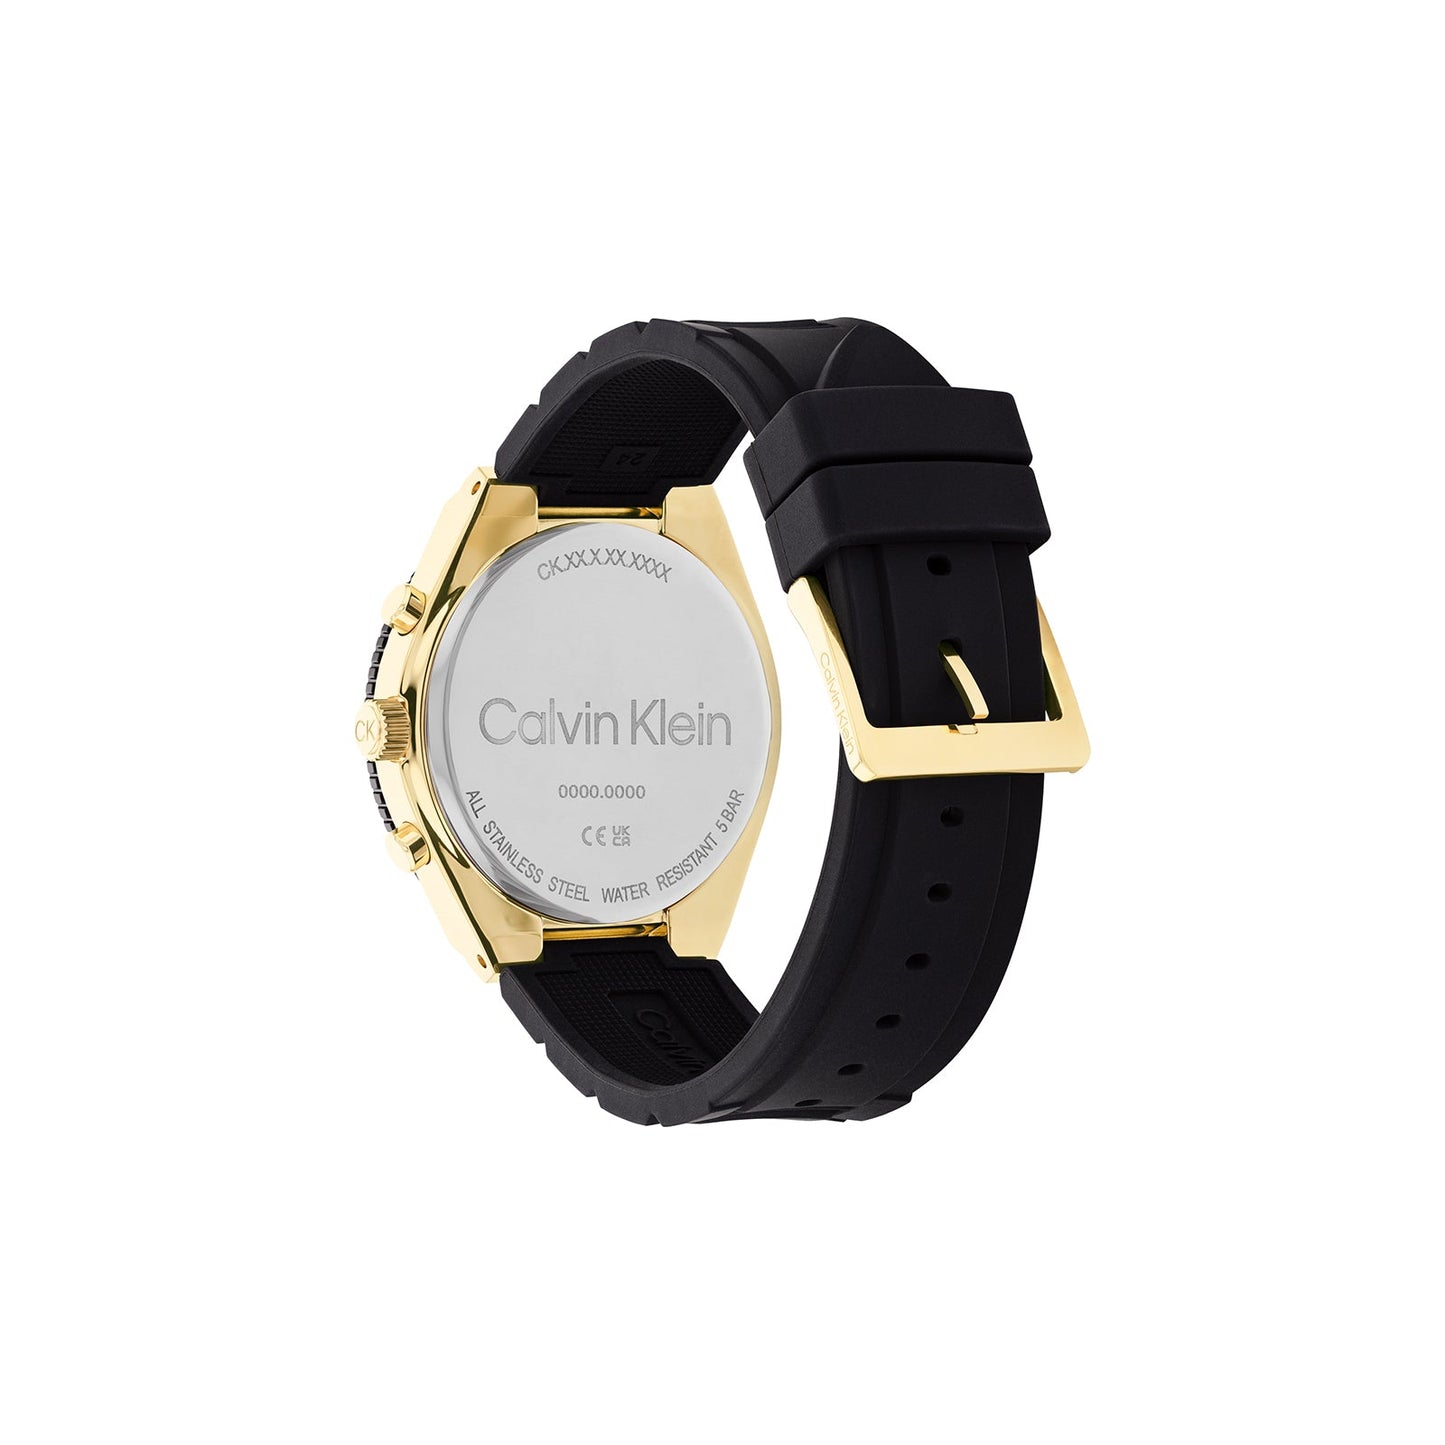 Calvin Klein 25200306 Men's Silicone Watch